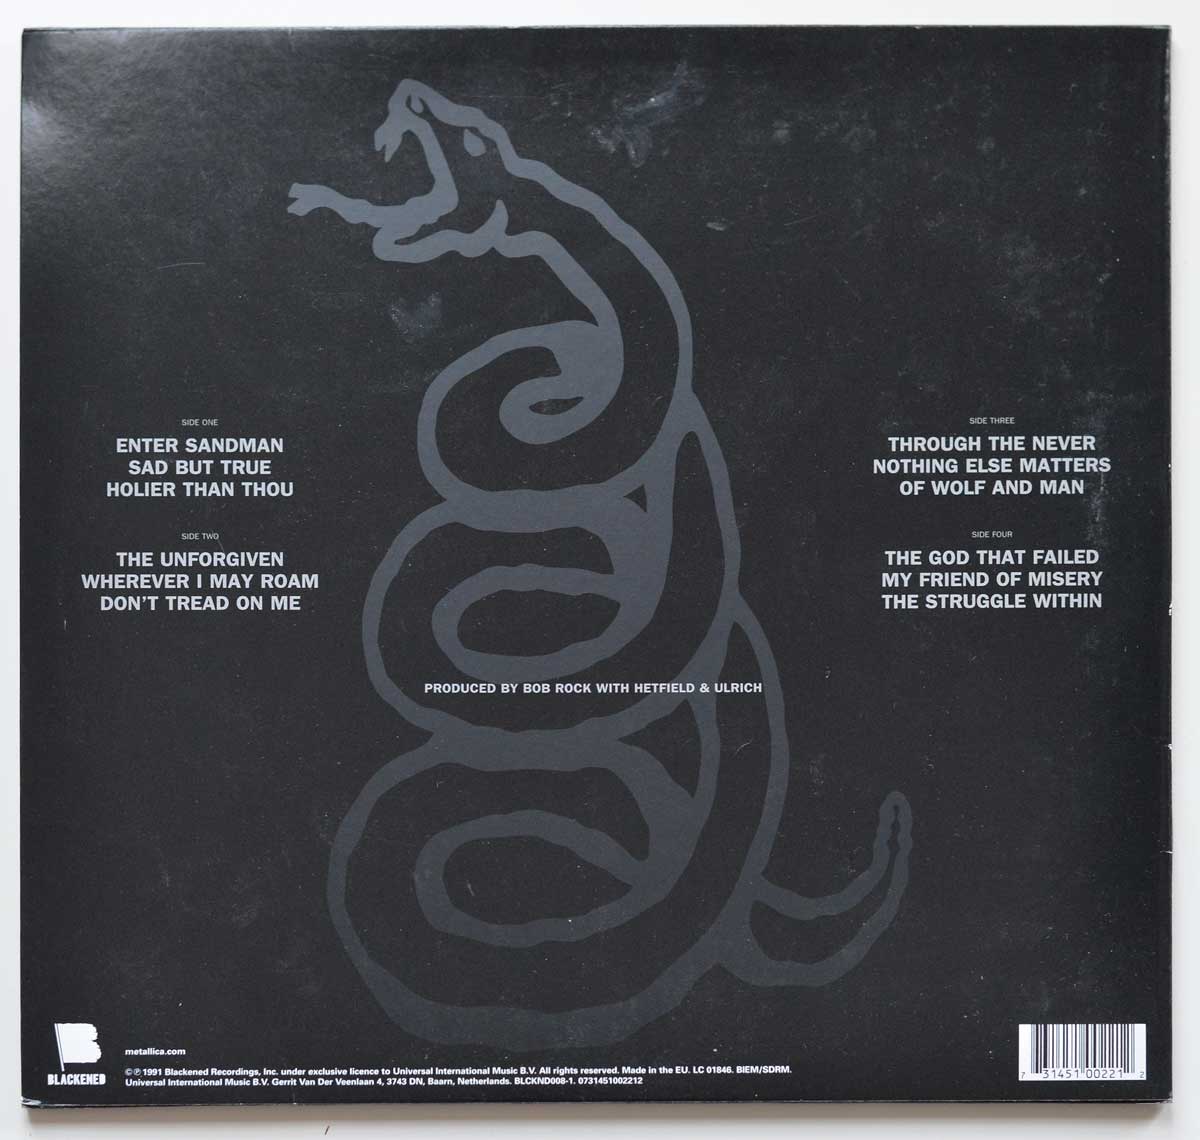 Photo of album back cover METALLICA The Black Album 2LP 180 Grams Audiophile Blackened Records 